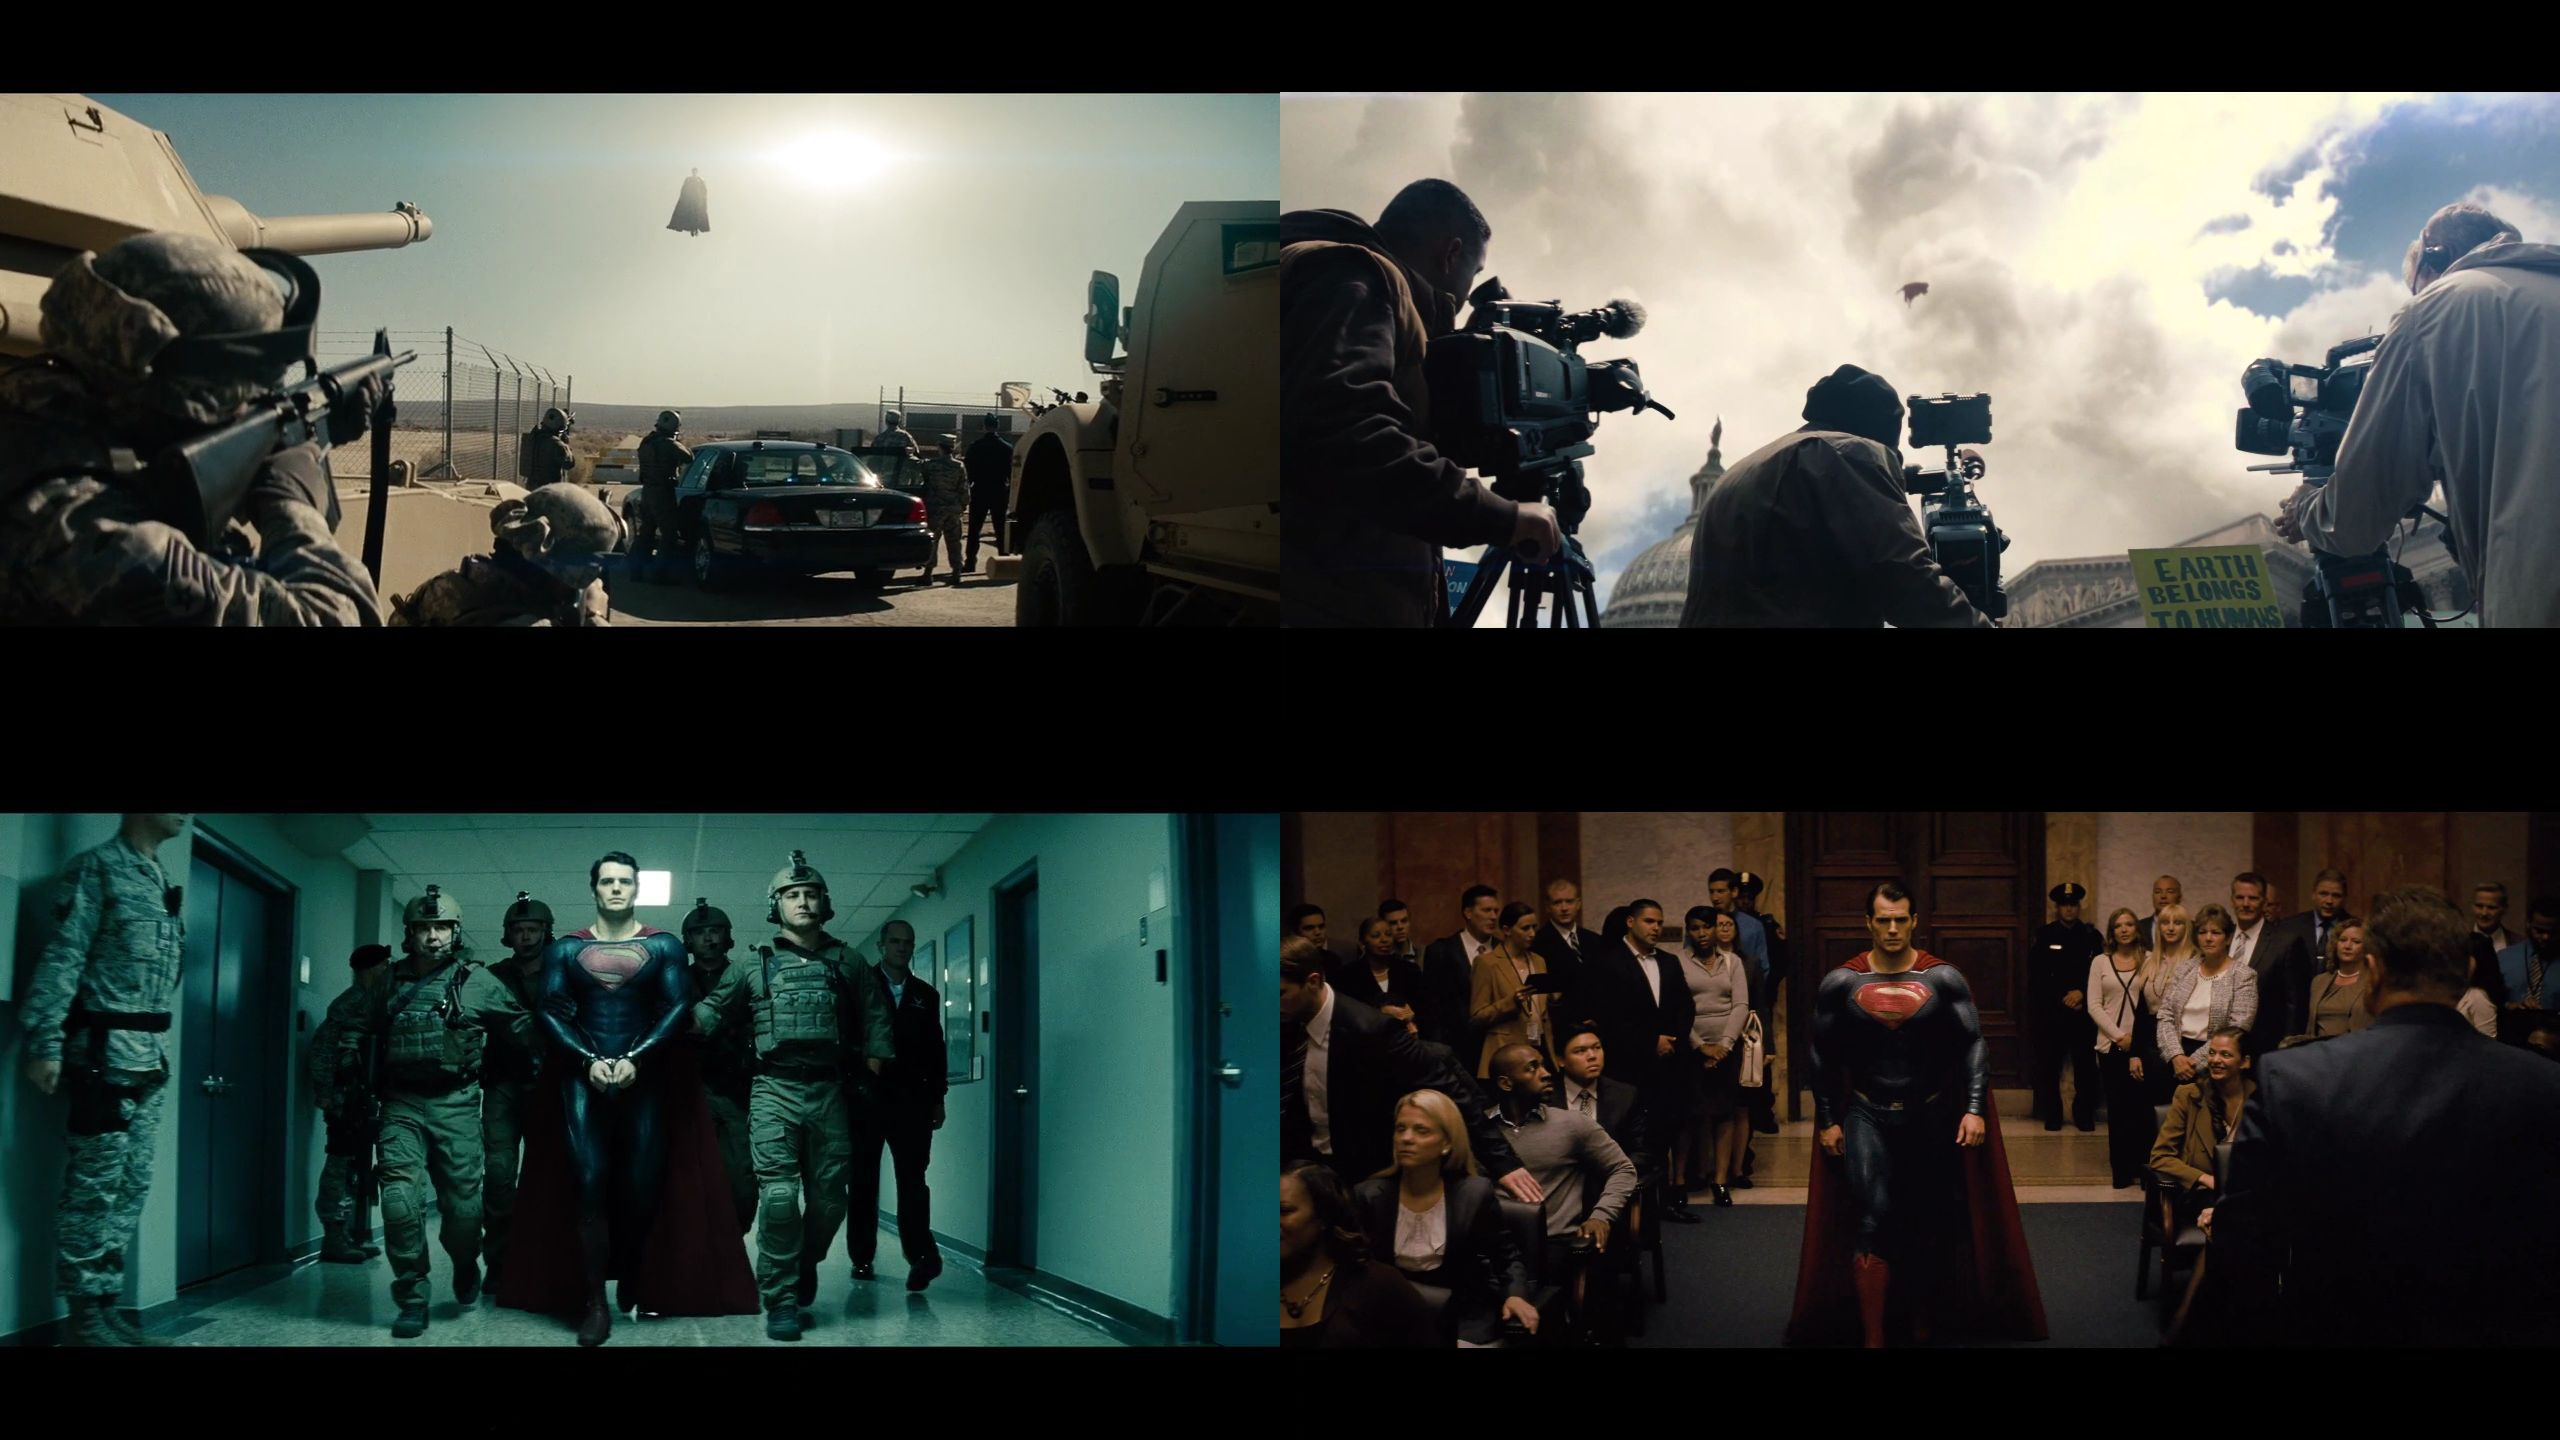 蝙蝠侠大战超人正义黎明从历史宗教文化角度深度解析影片隐喻